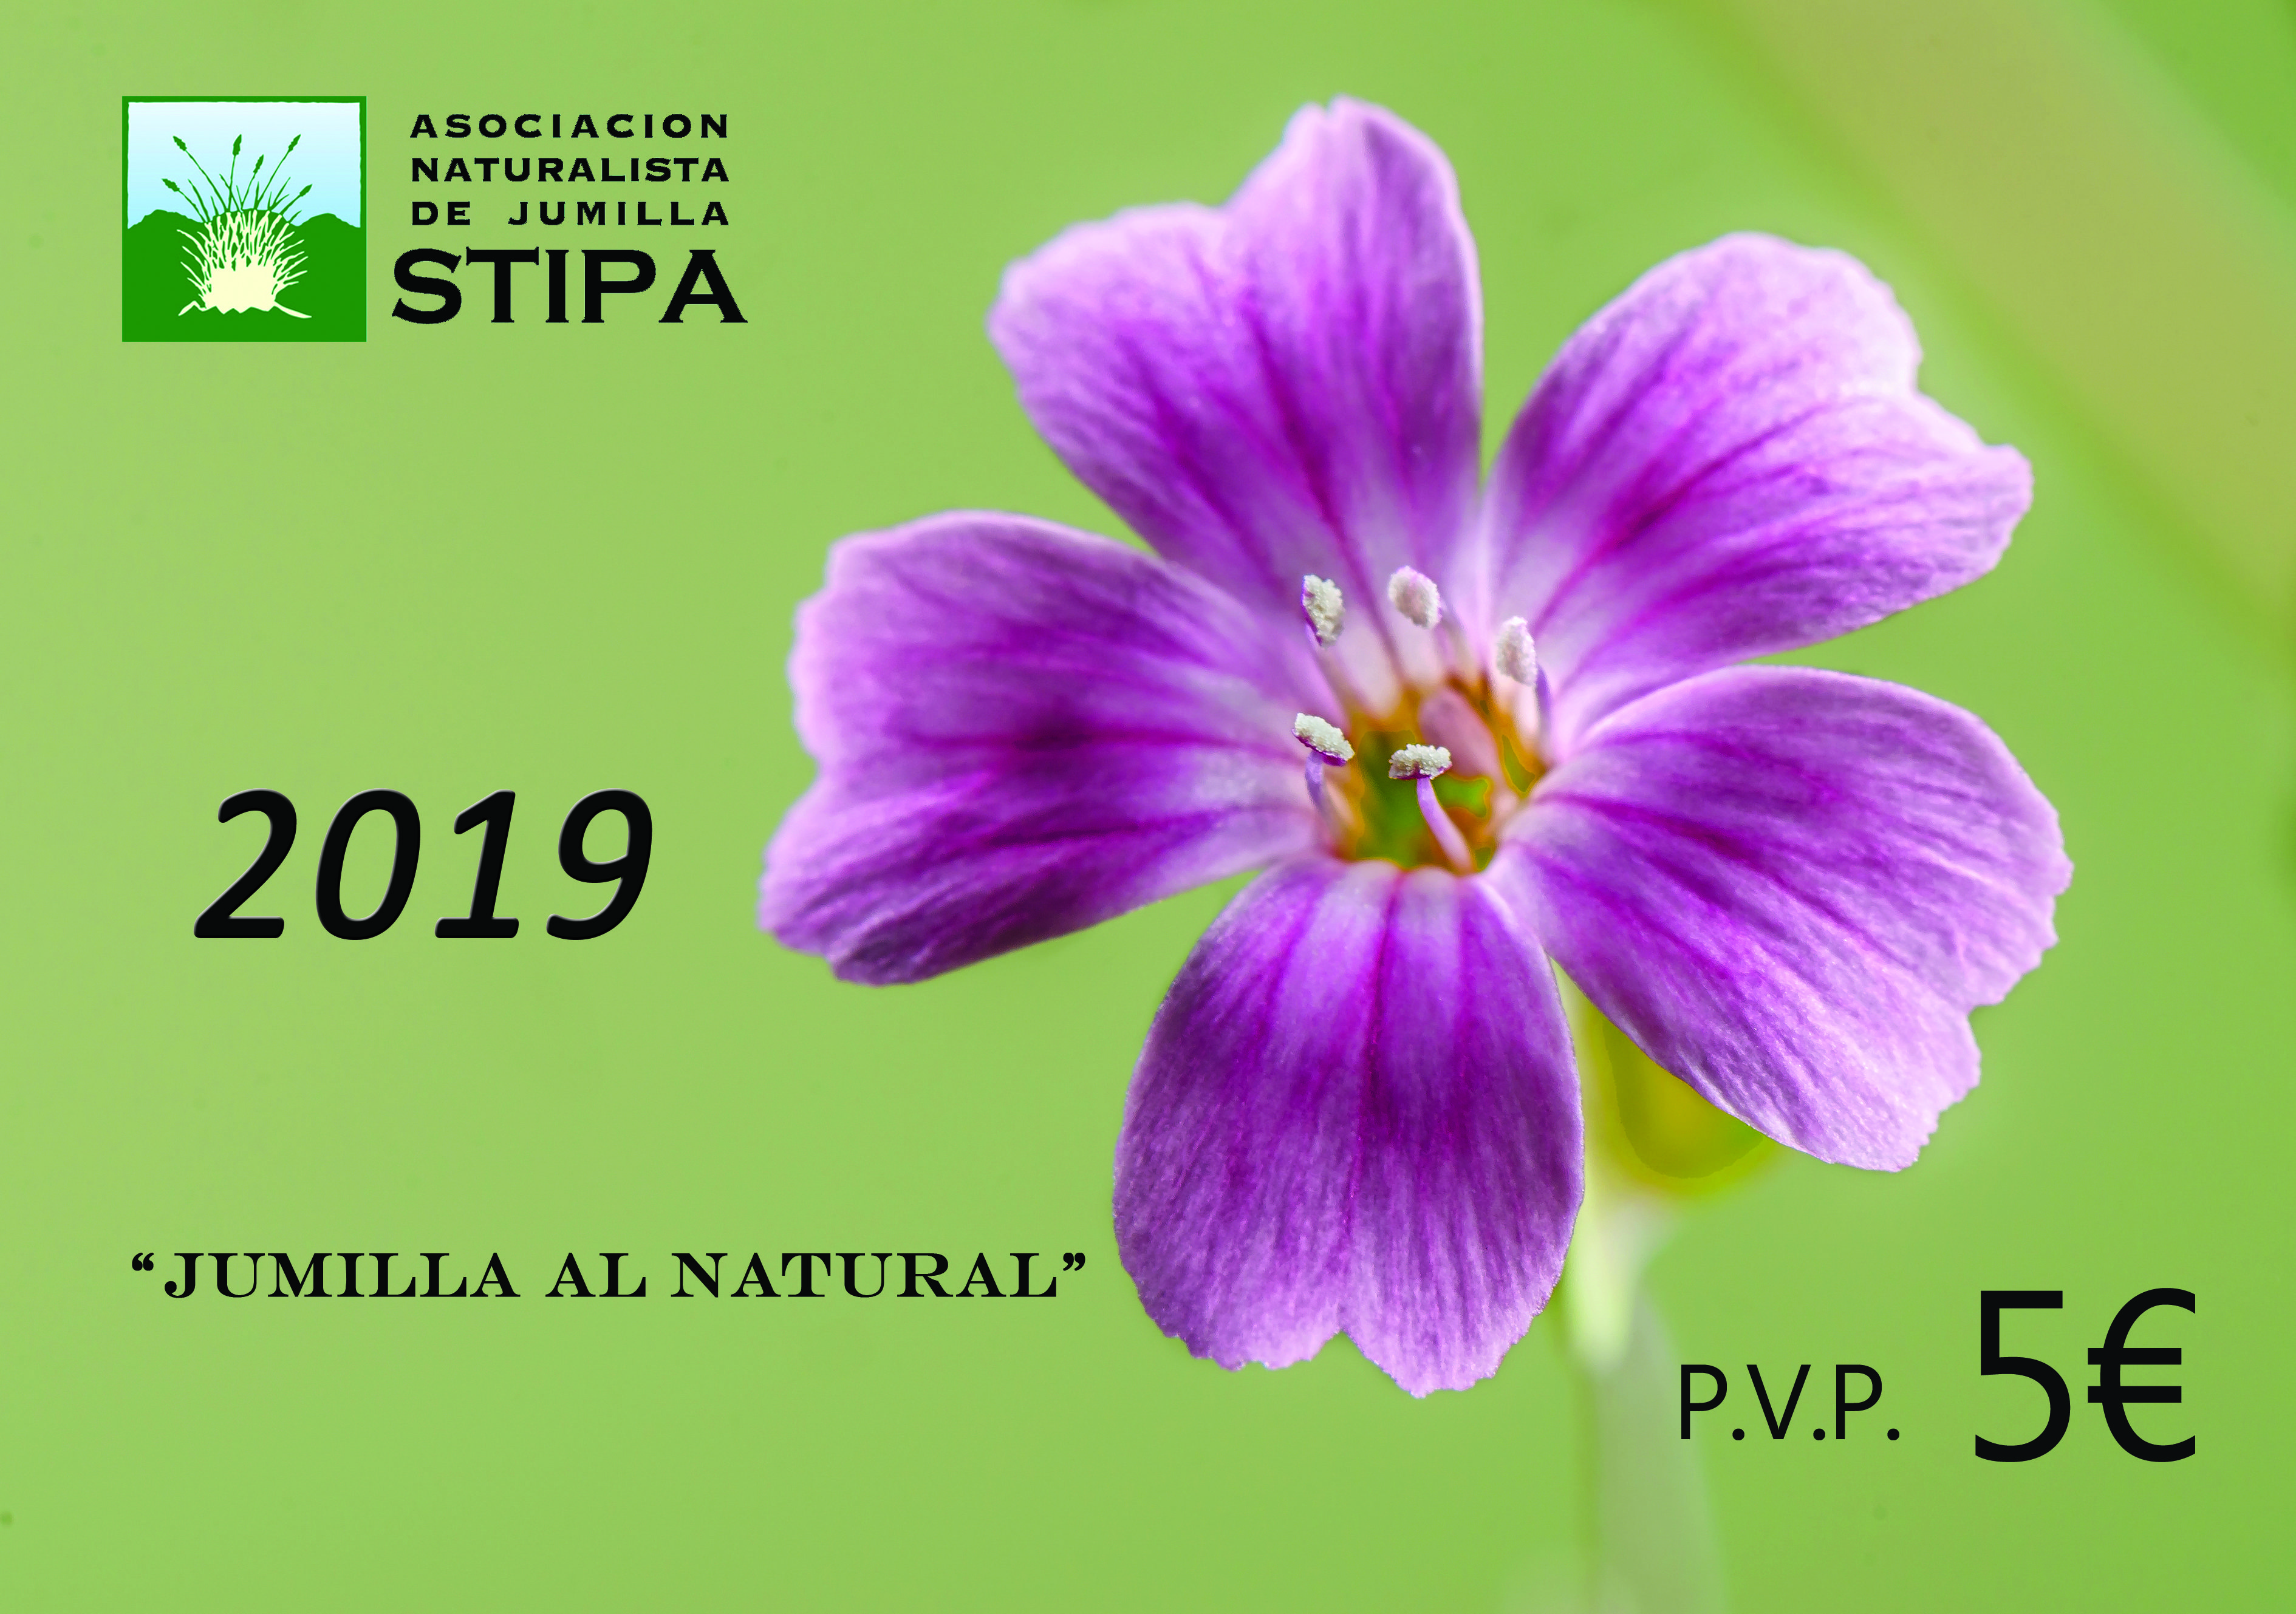 El calendario ‘Jumilla al natural’ 2019 de STIPA ya está a la venta al público